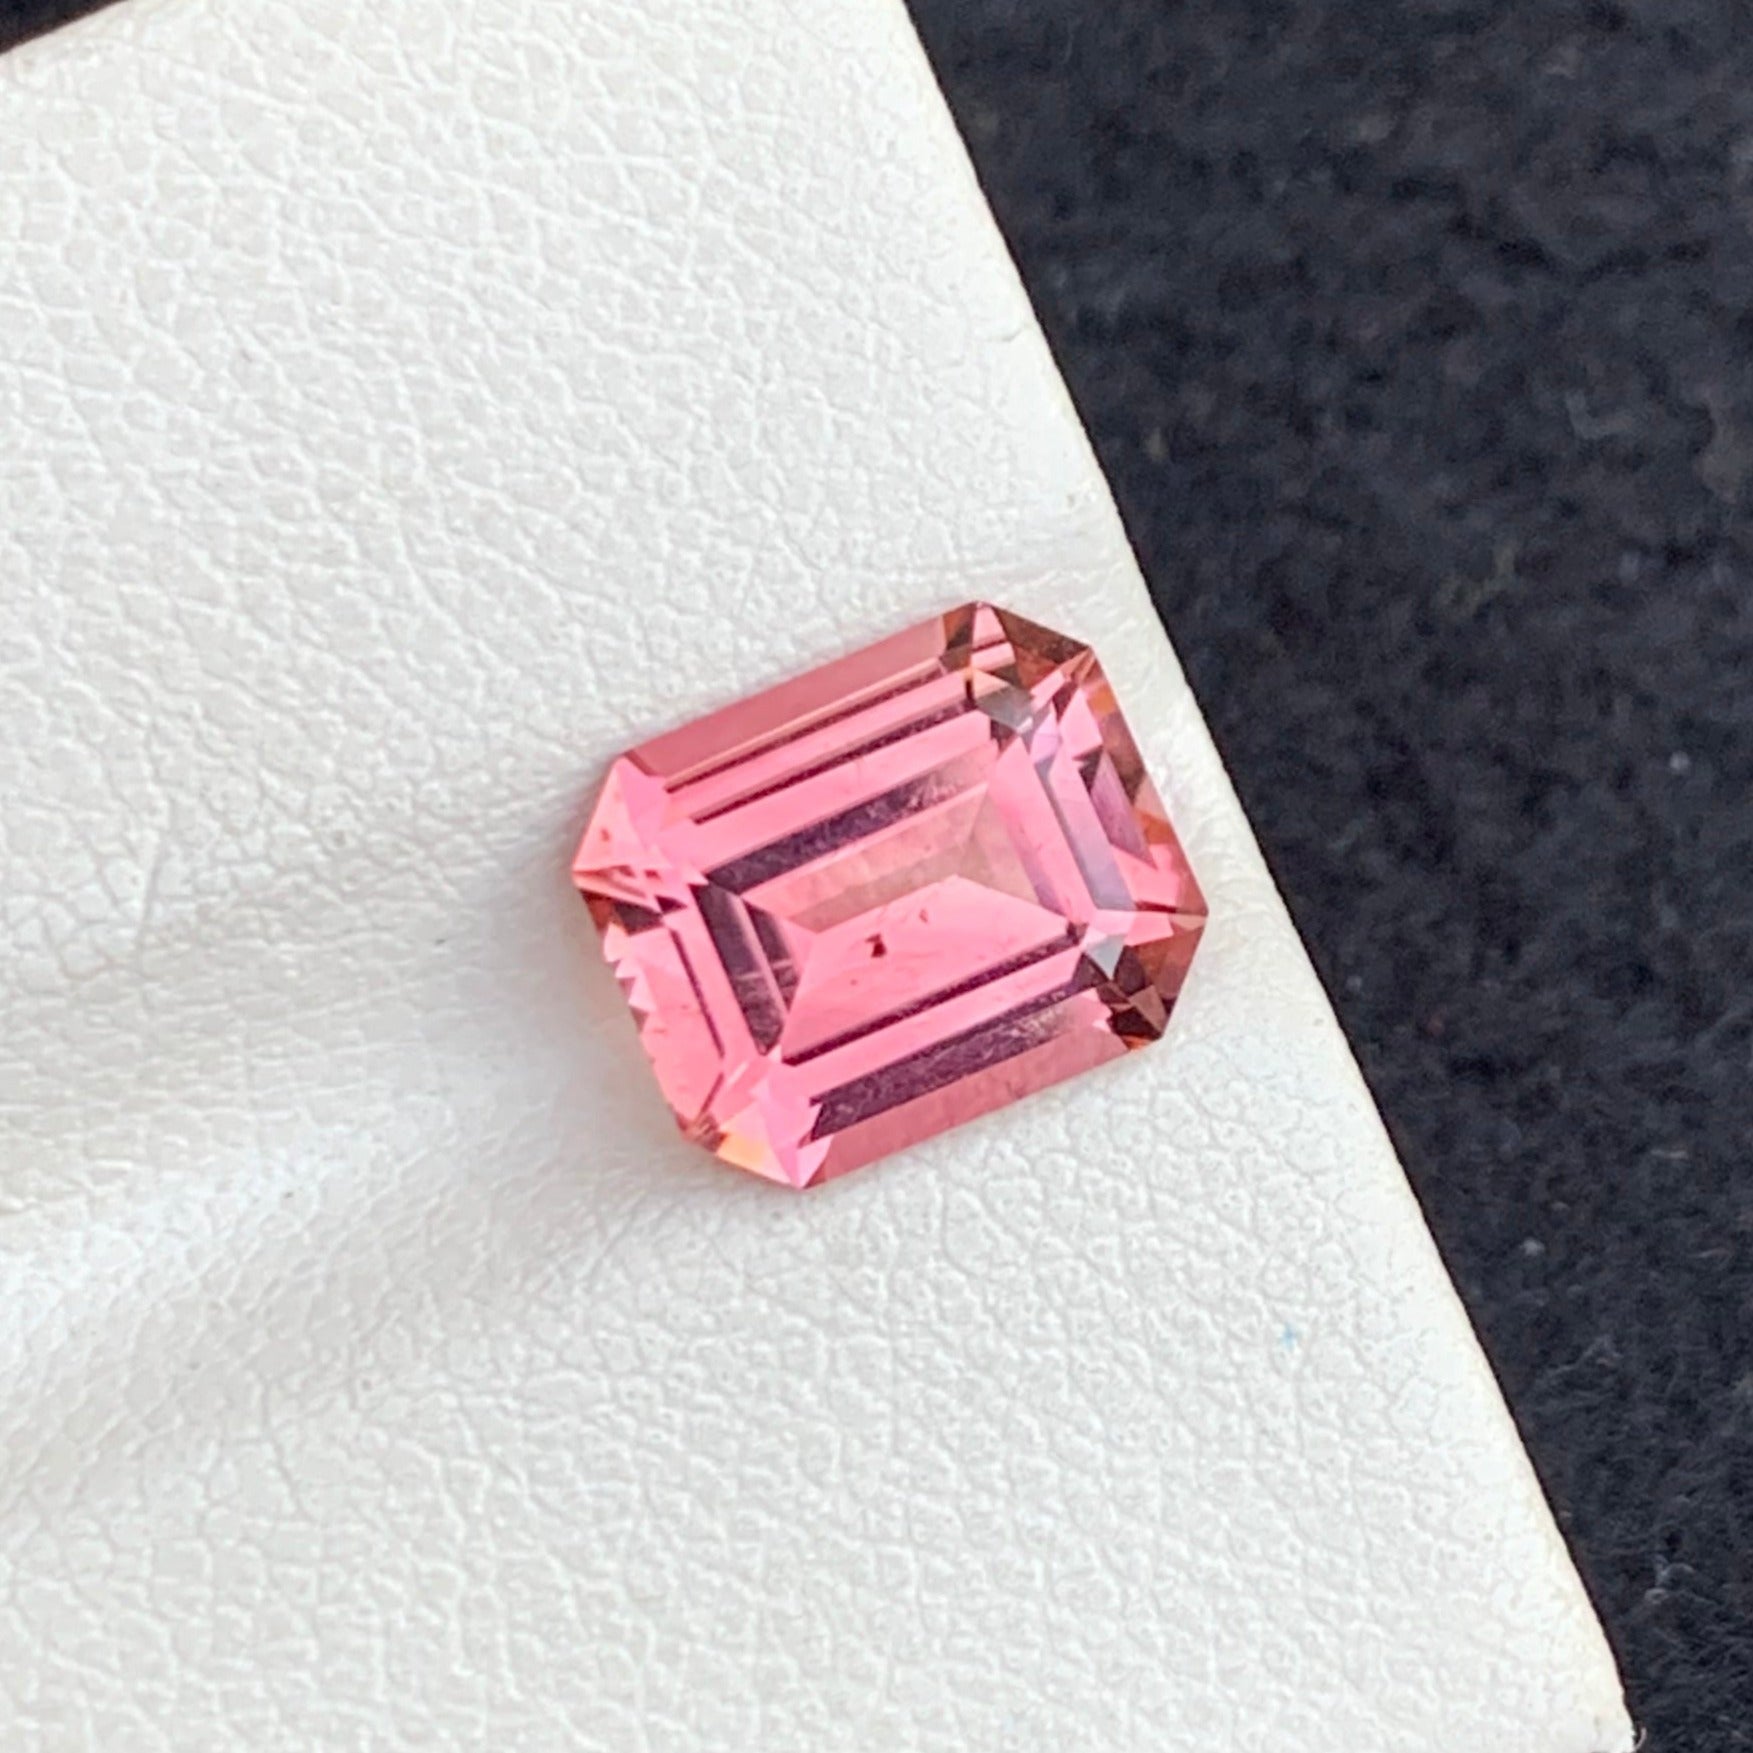 Pink Tourmaline stone